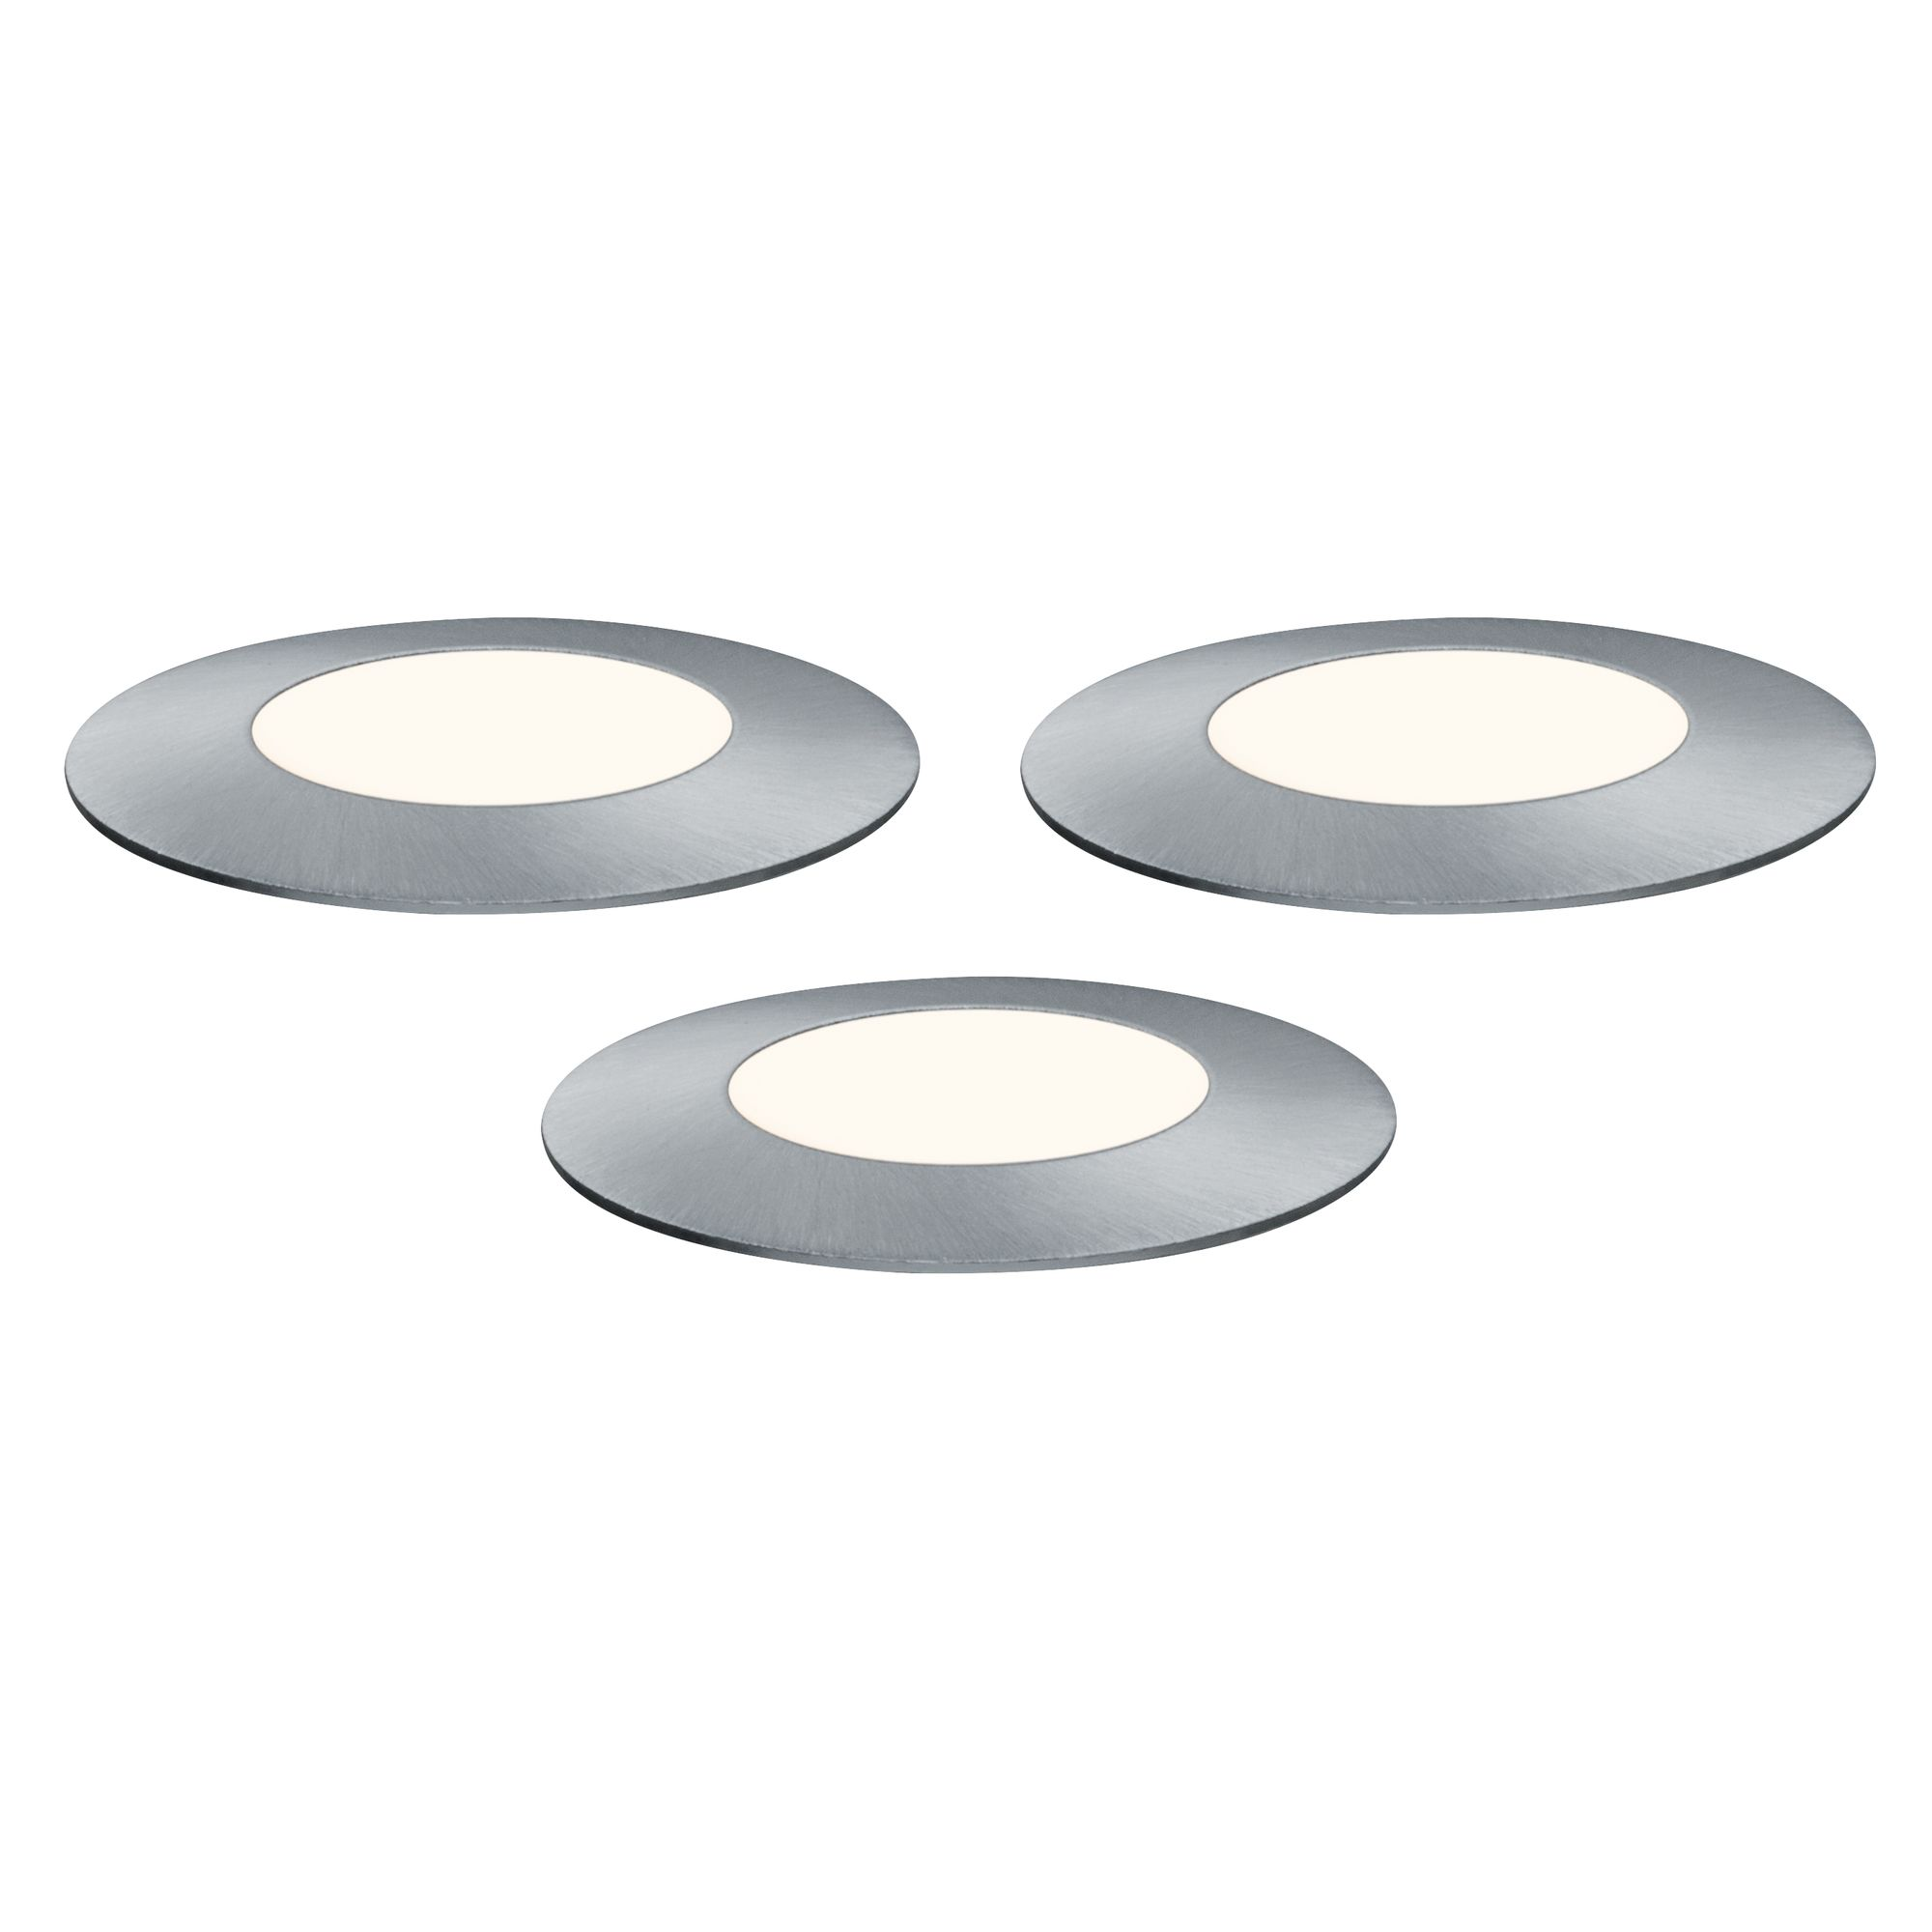 Einbauleuchten-Set 'Plug & Shine' für außen, 3 Einbauleuchten mit Verbindungskabel, 50 lm, silber + product picture